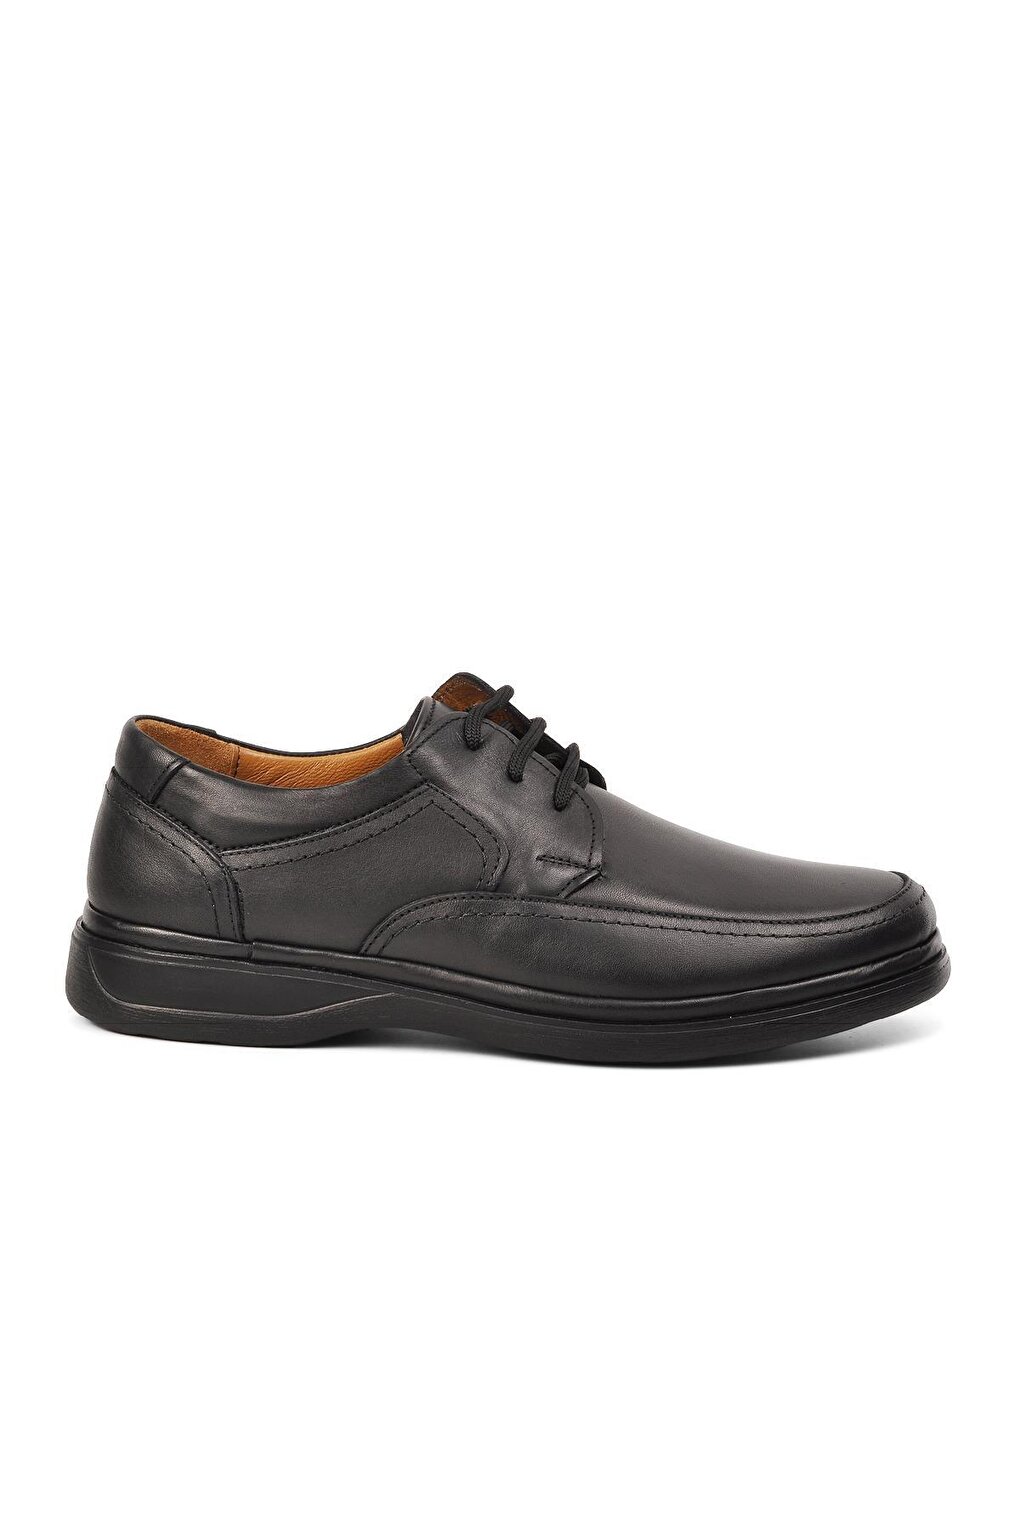 Черные мужские классические туфли из натуральной кожи на шнуровке 295 Ayakmod